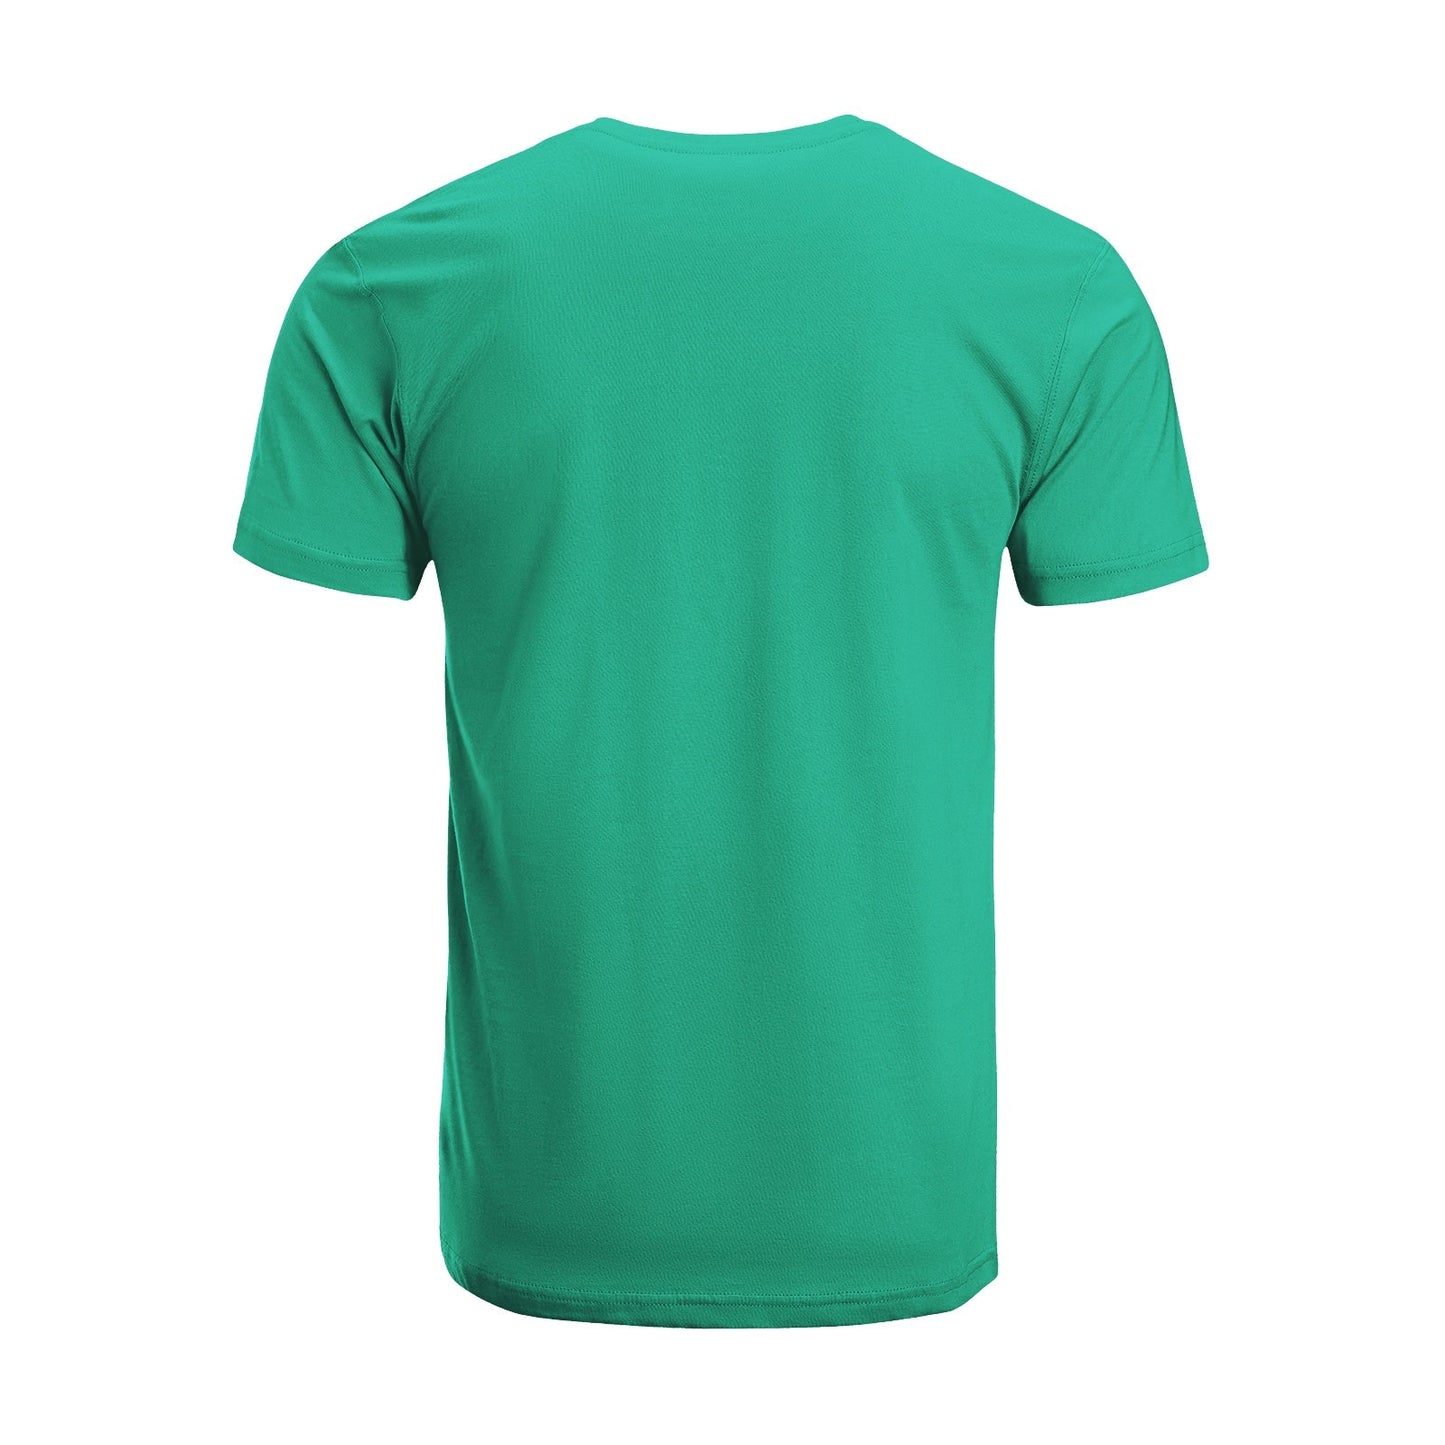 Unisex Short Sleeve Crew Neck Cotton Jersey T-Shirt TRUCK 32